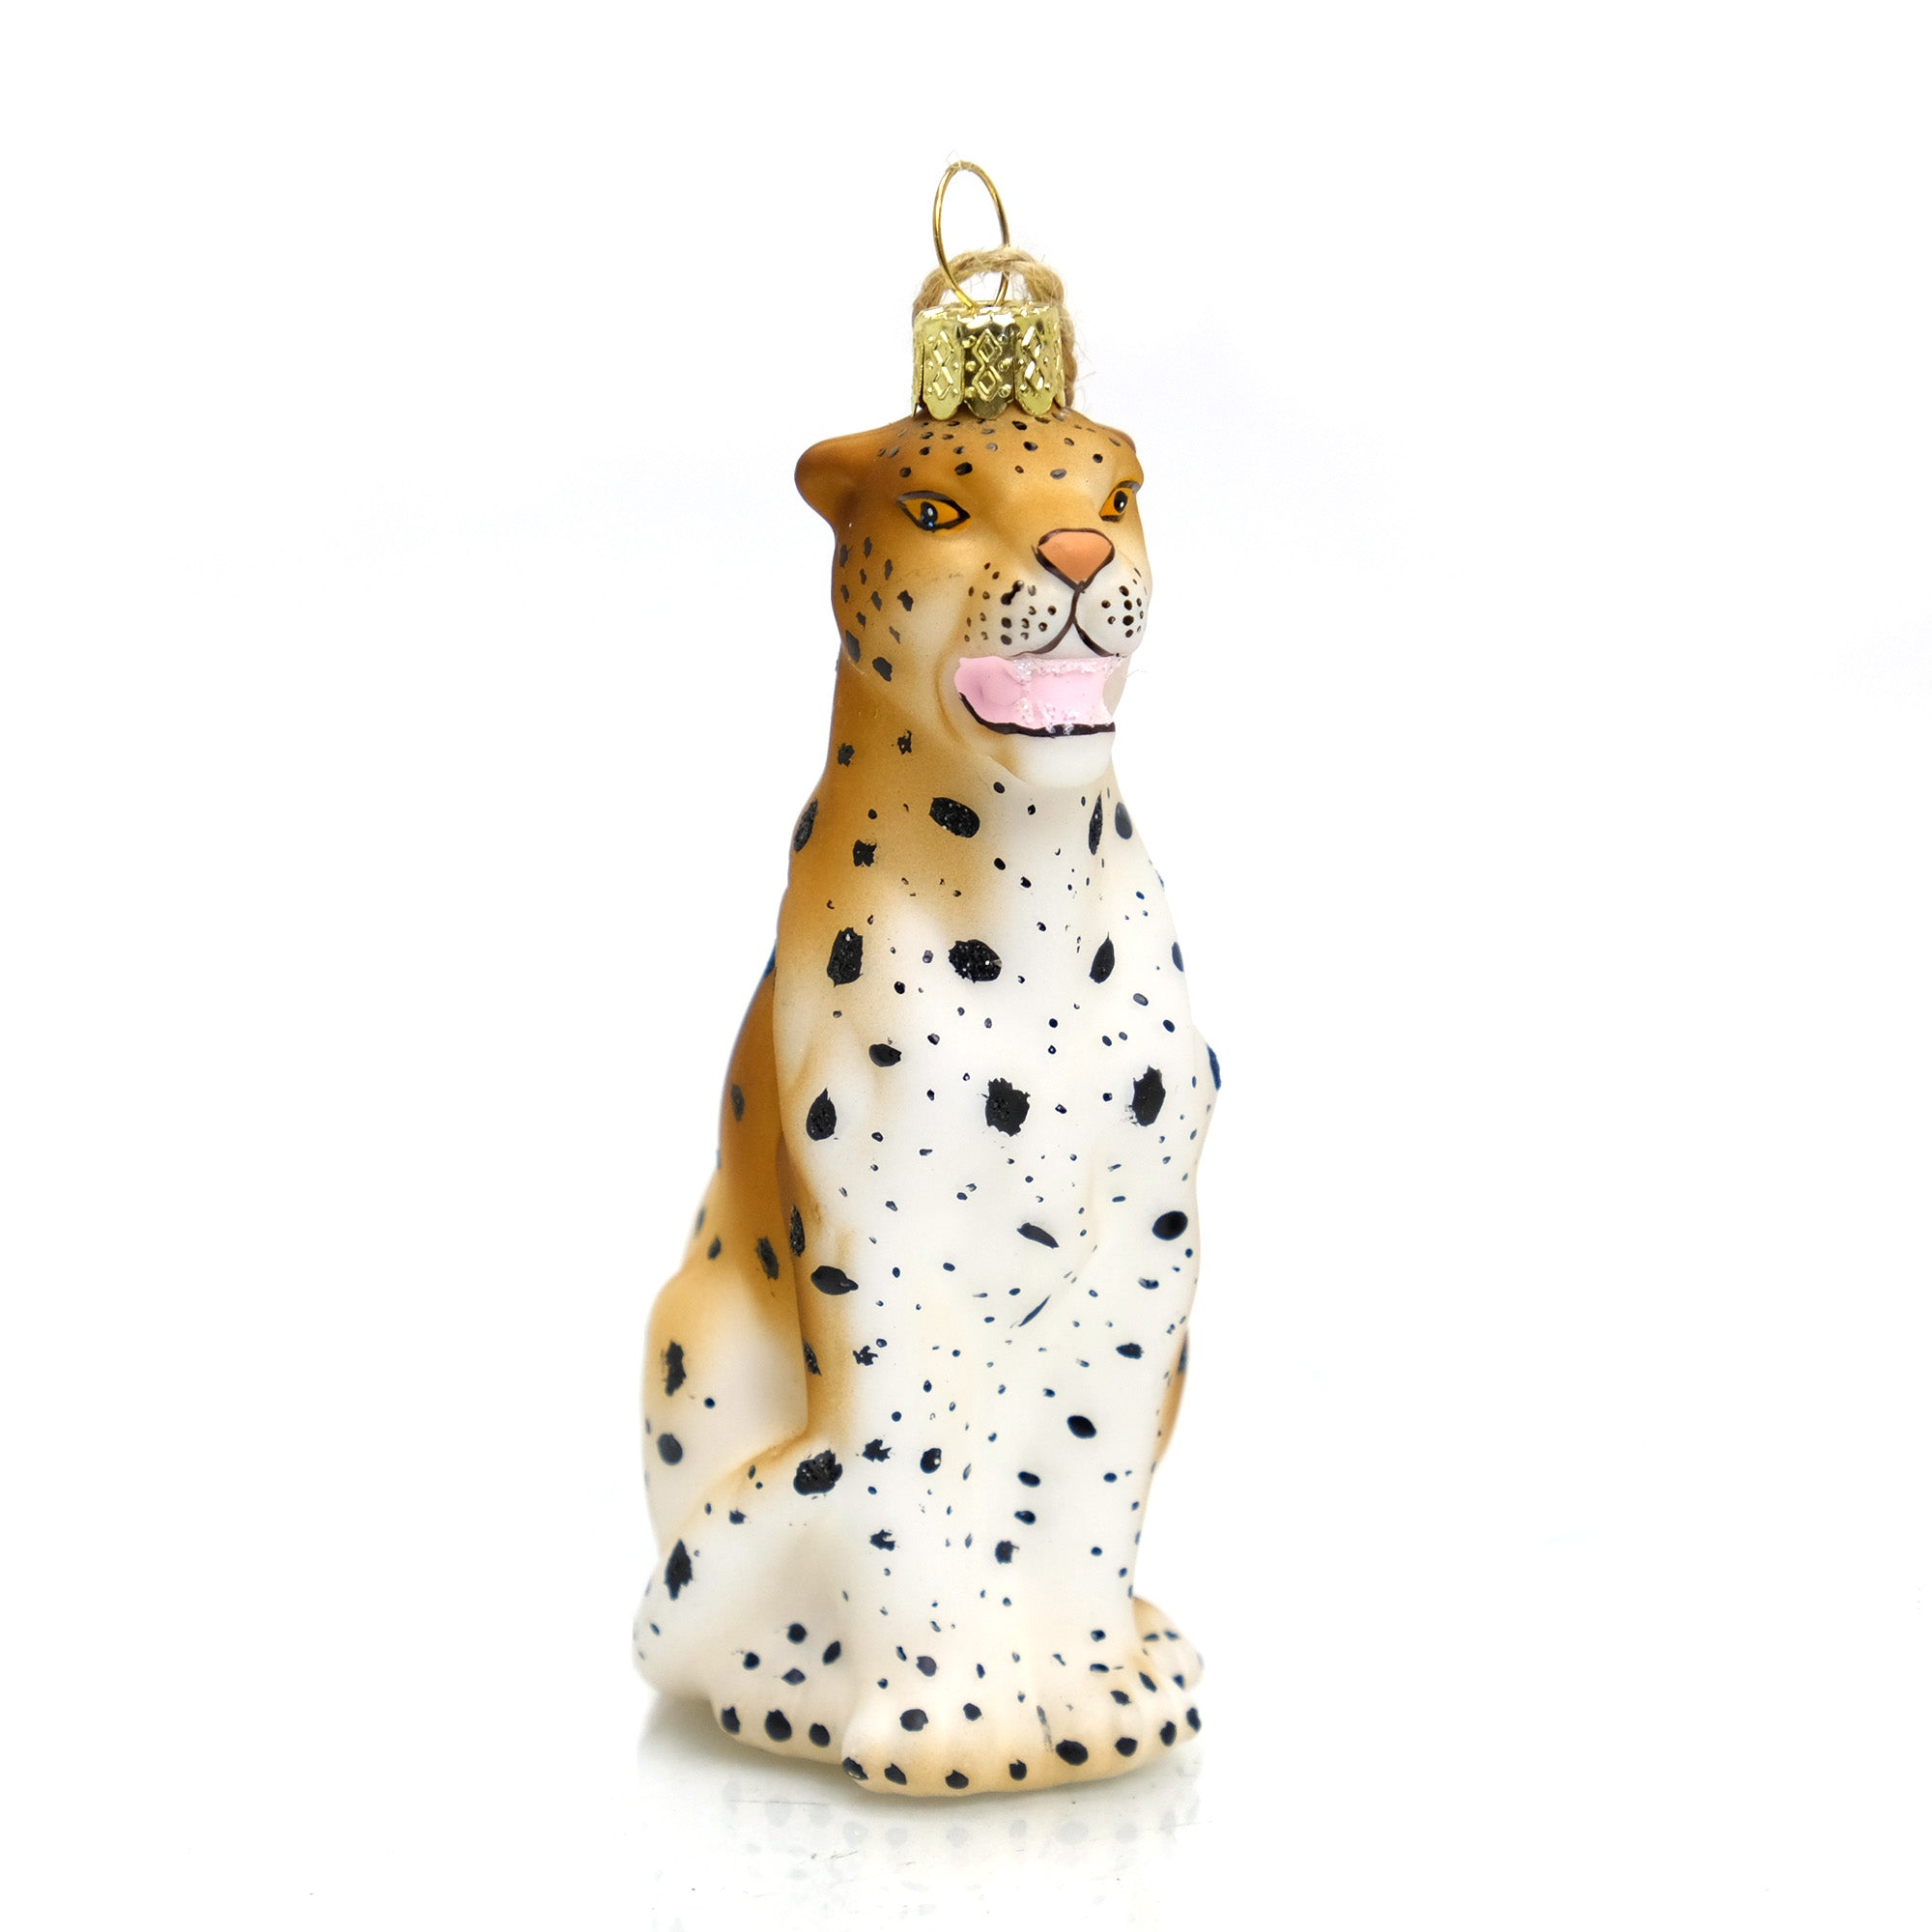 Roaring Cheetah Ornament – Beads of Paradise